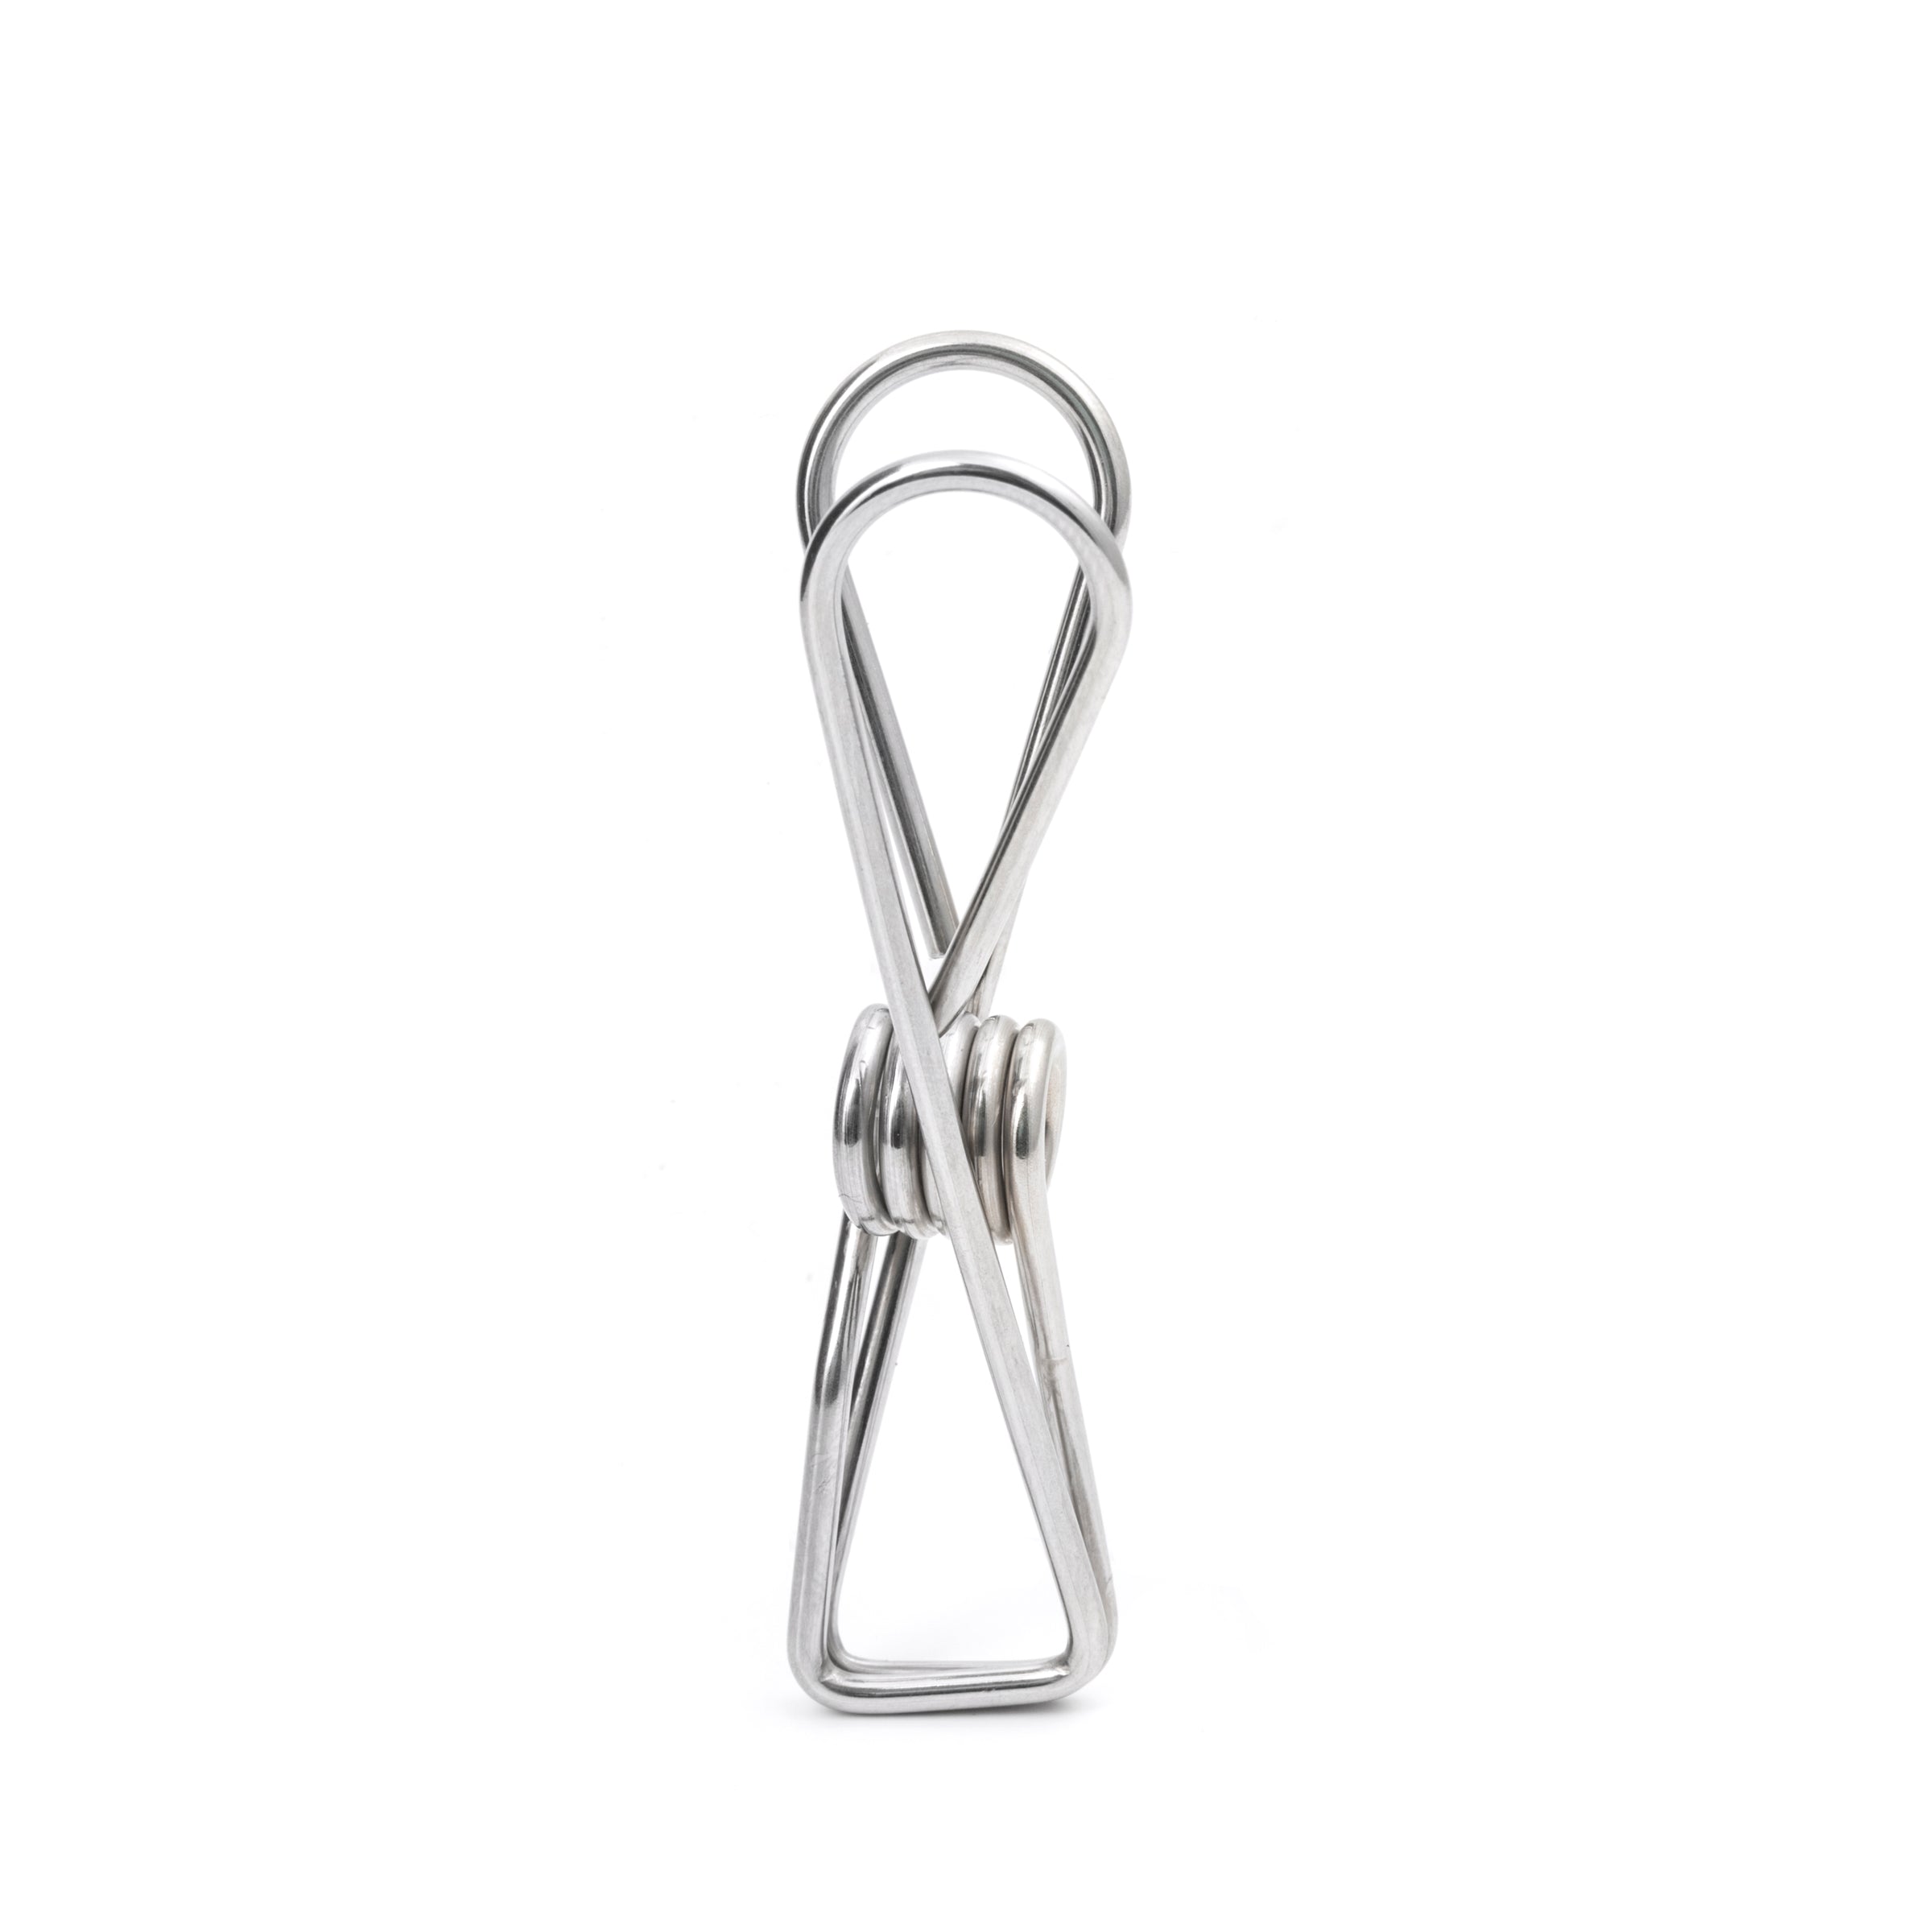 Wire Bag Clips – Kikkerland Design Inc